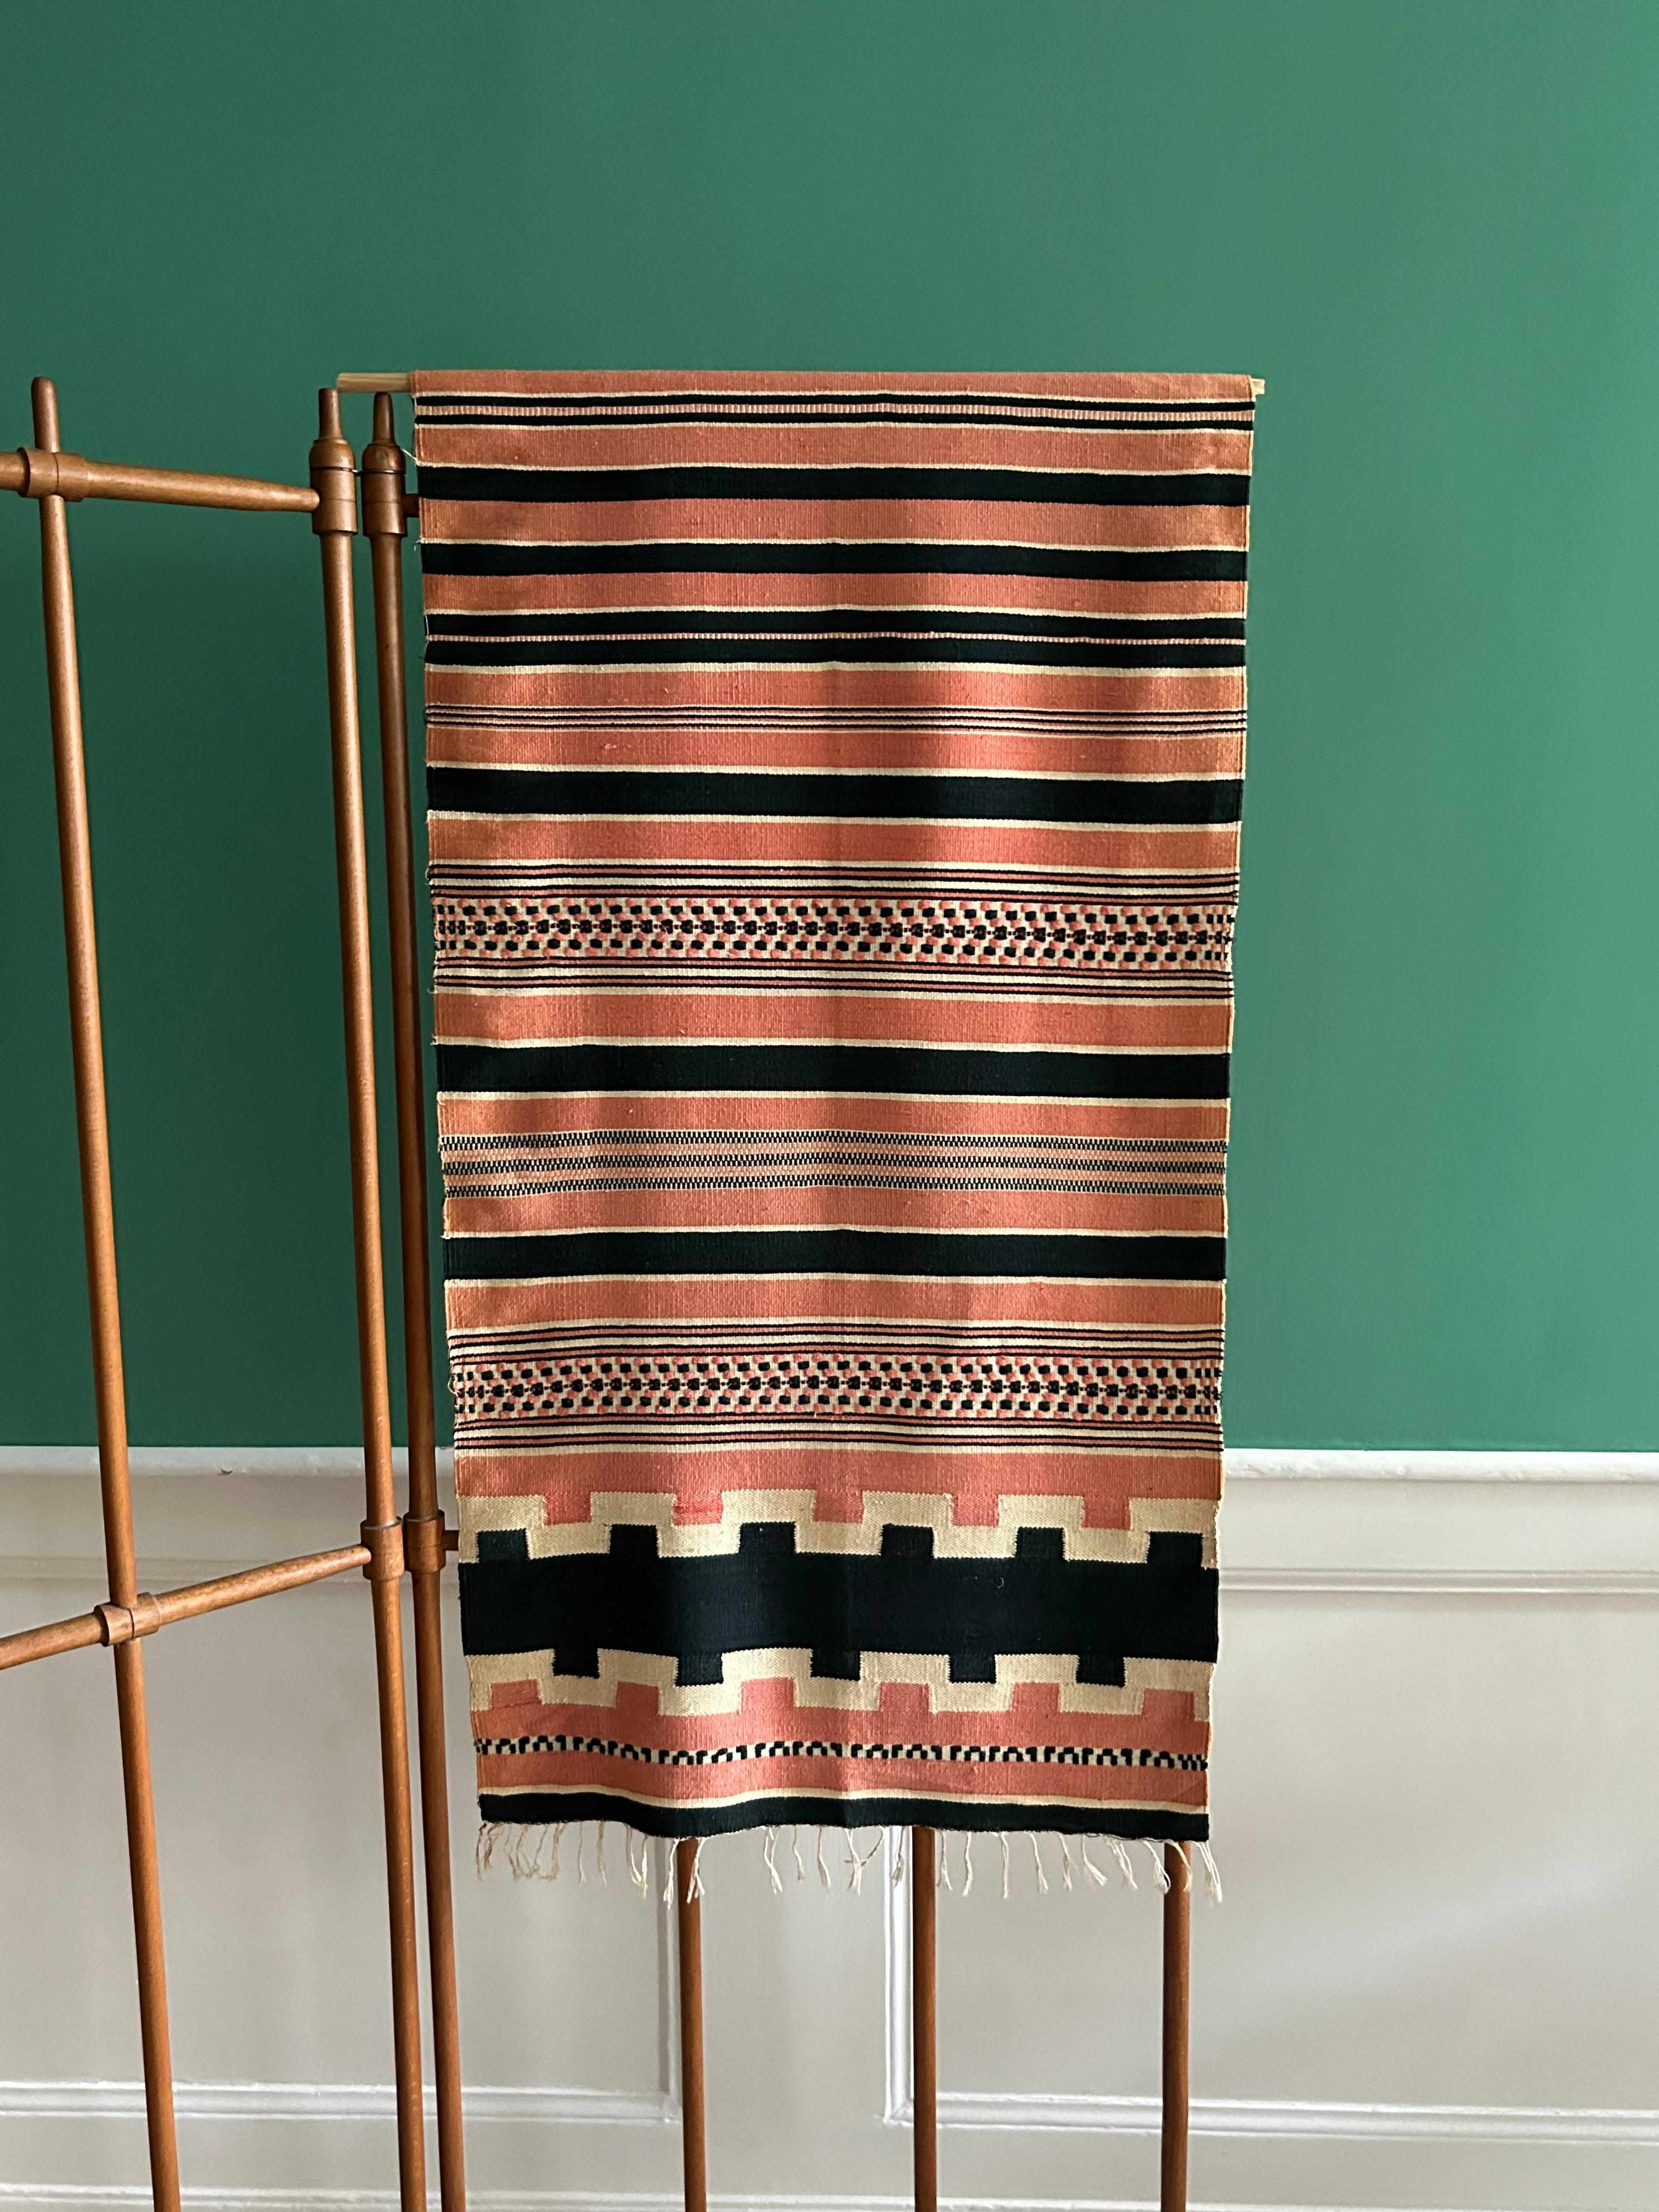 Ethiopia, 1950s

Ethiopian shawl cloth.

H 207 x W 58 cm